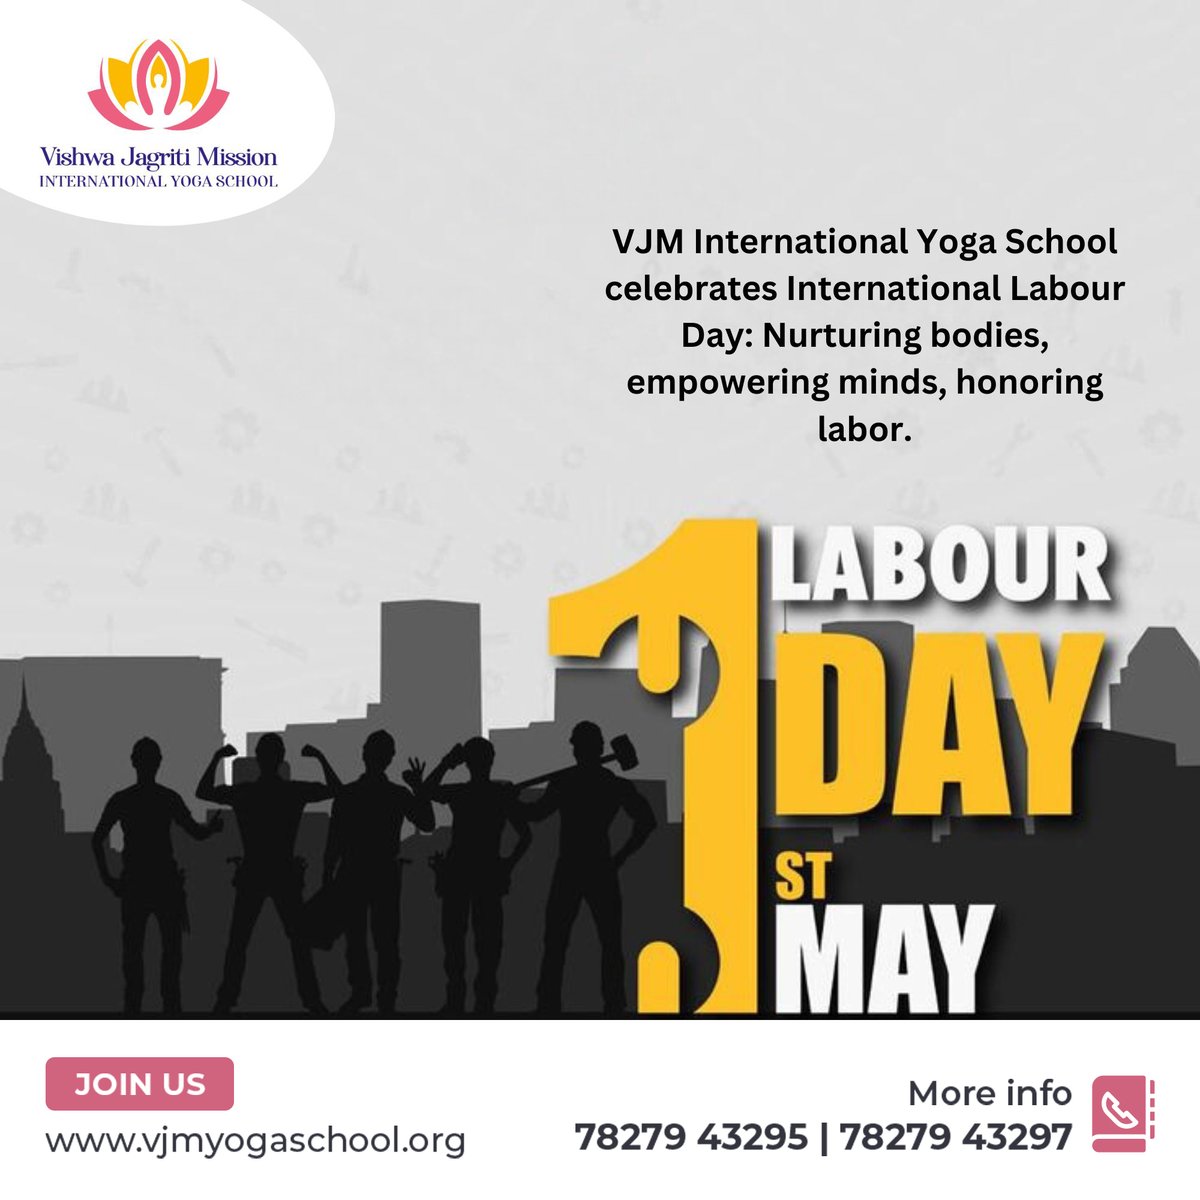 VJM International Yoga School celebrates International Labour Day: Nurturing bodies, empowering minds, honoring labor.
.
.
#vjmyogaschool #vjminternationalyogaschool #labourday #workersrights #mayday #workersolidarity #fairwages #workersday #solidarityforever #workerpower